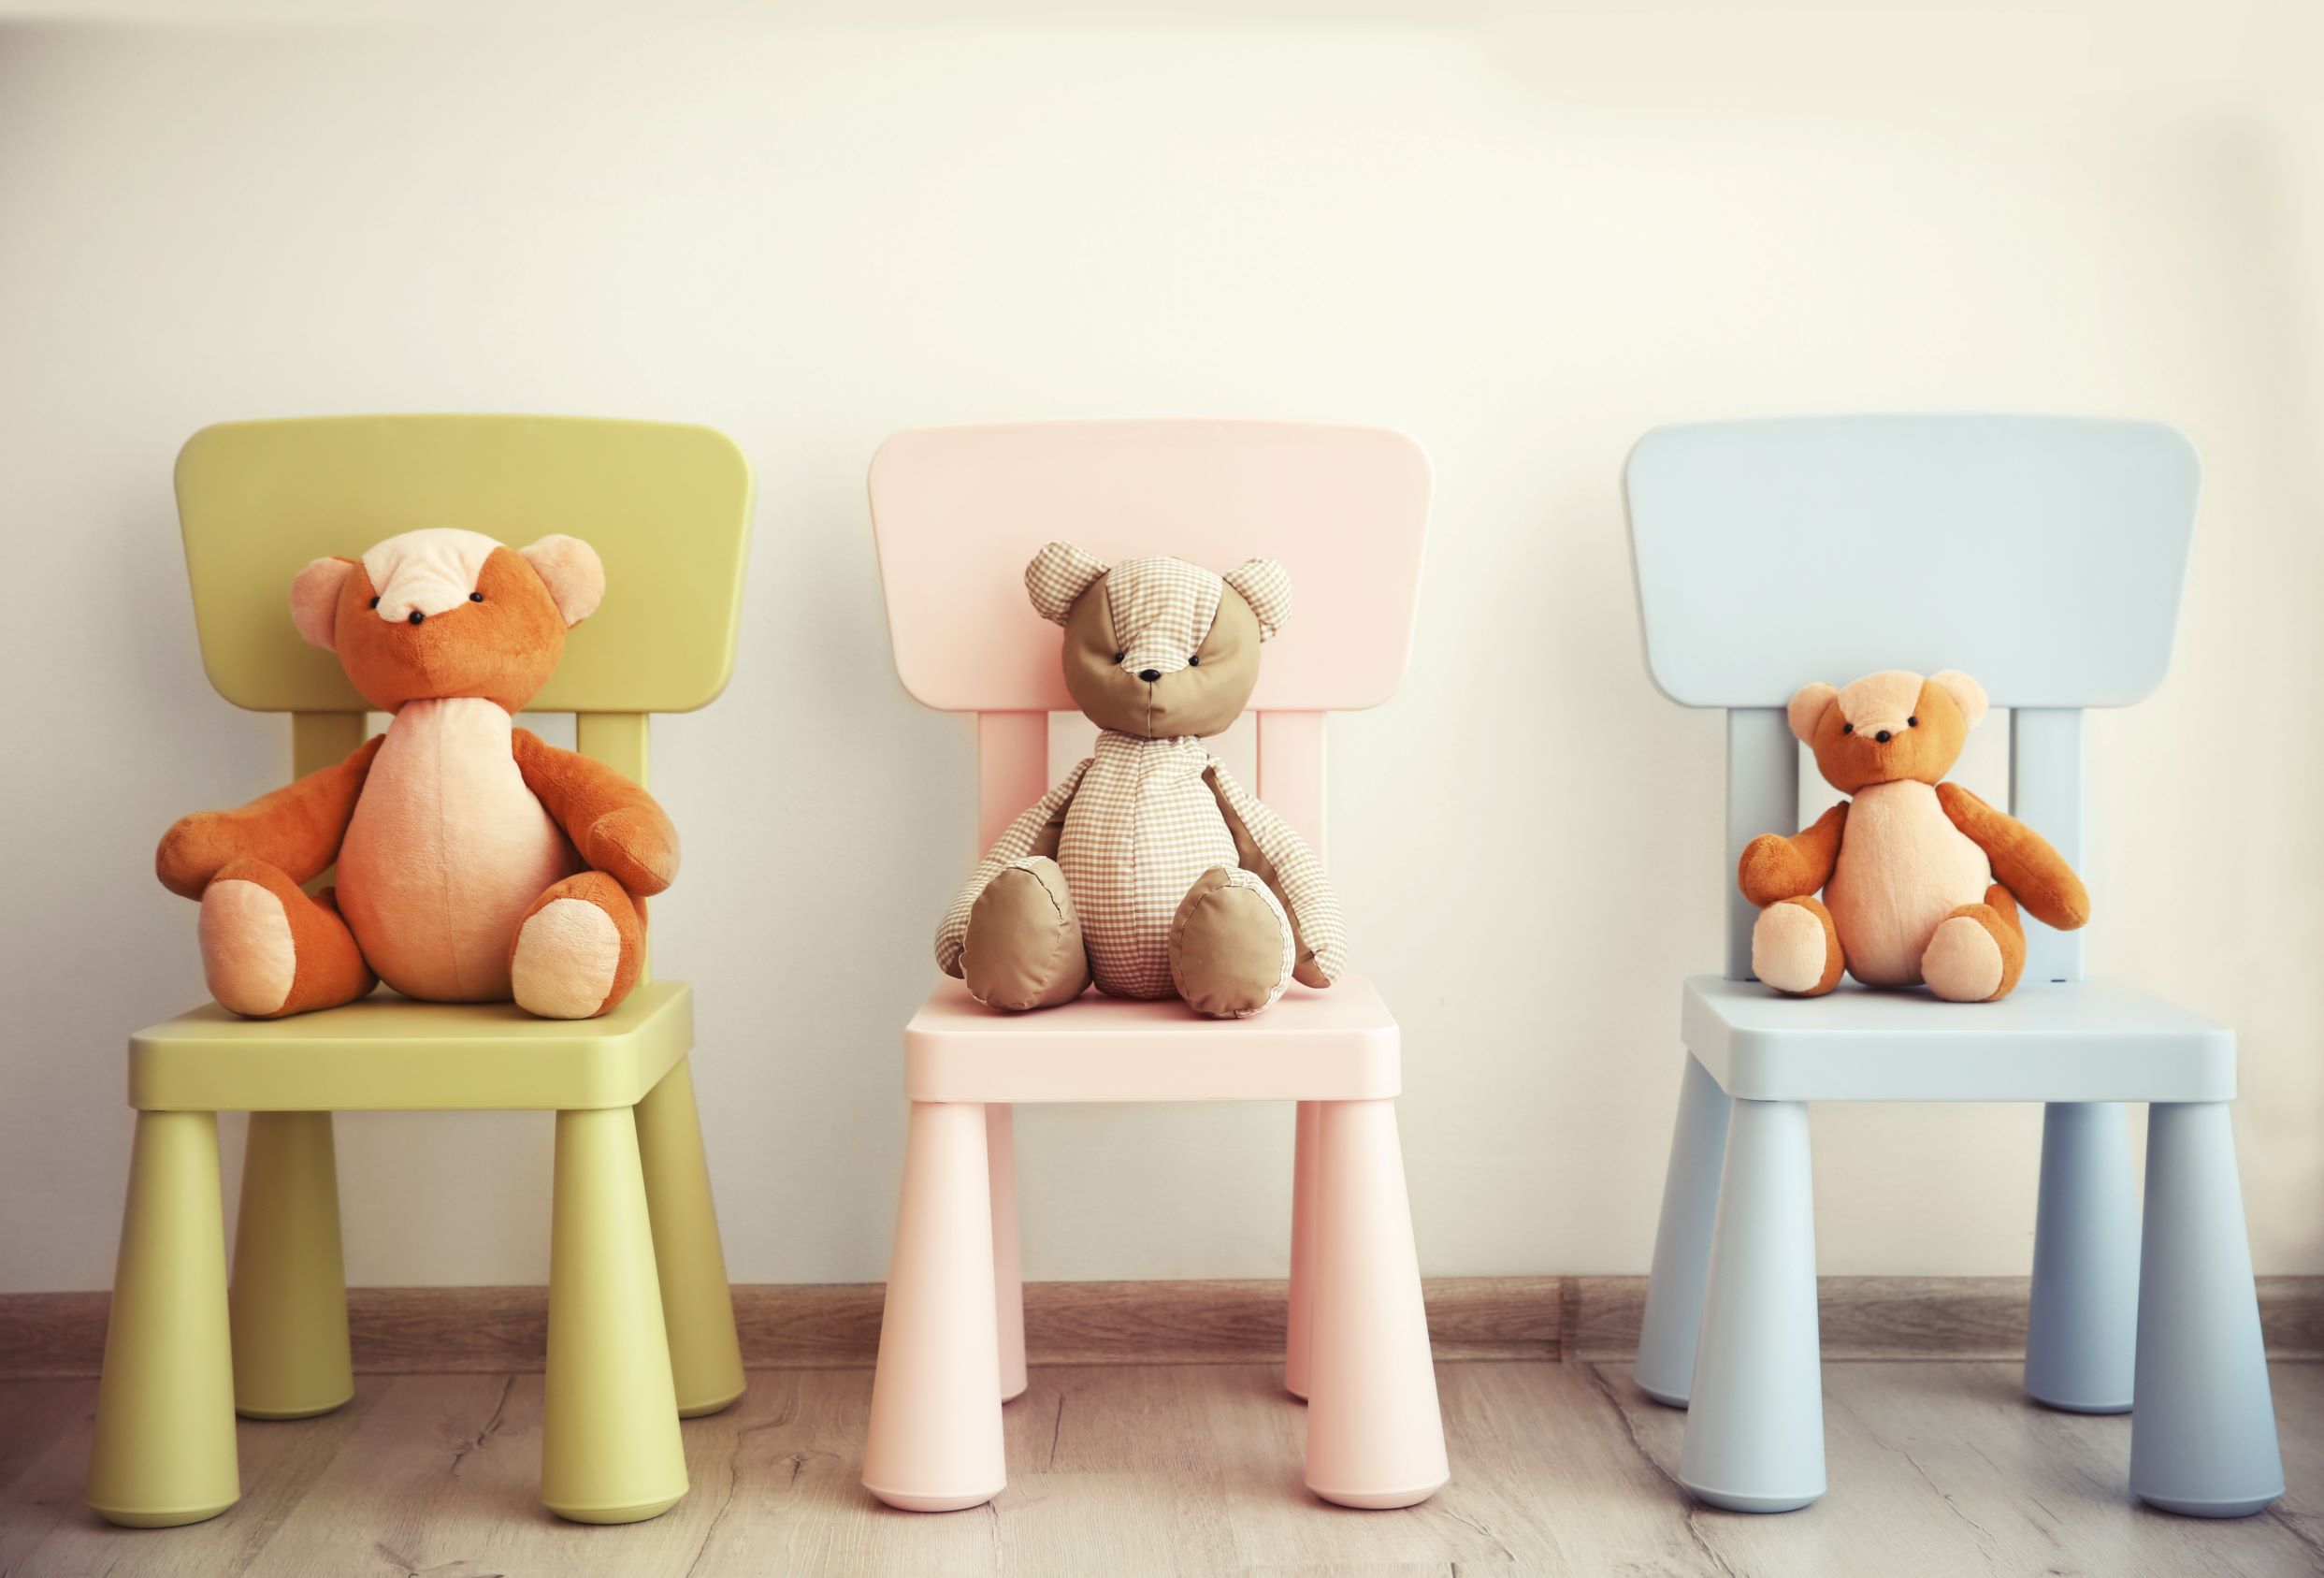 Trois chaises pour enfant de couleurs différentes, chacune occupée par une peluche